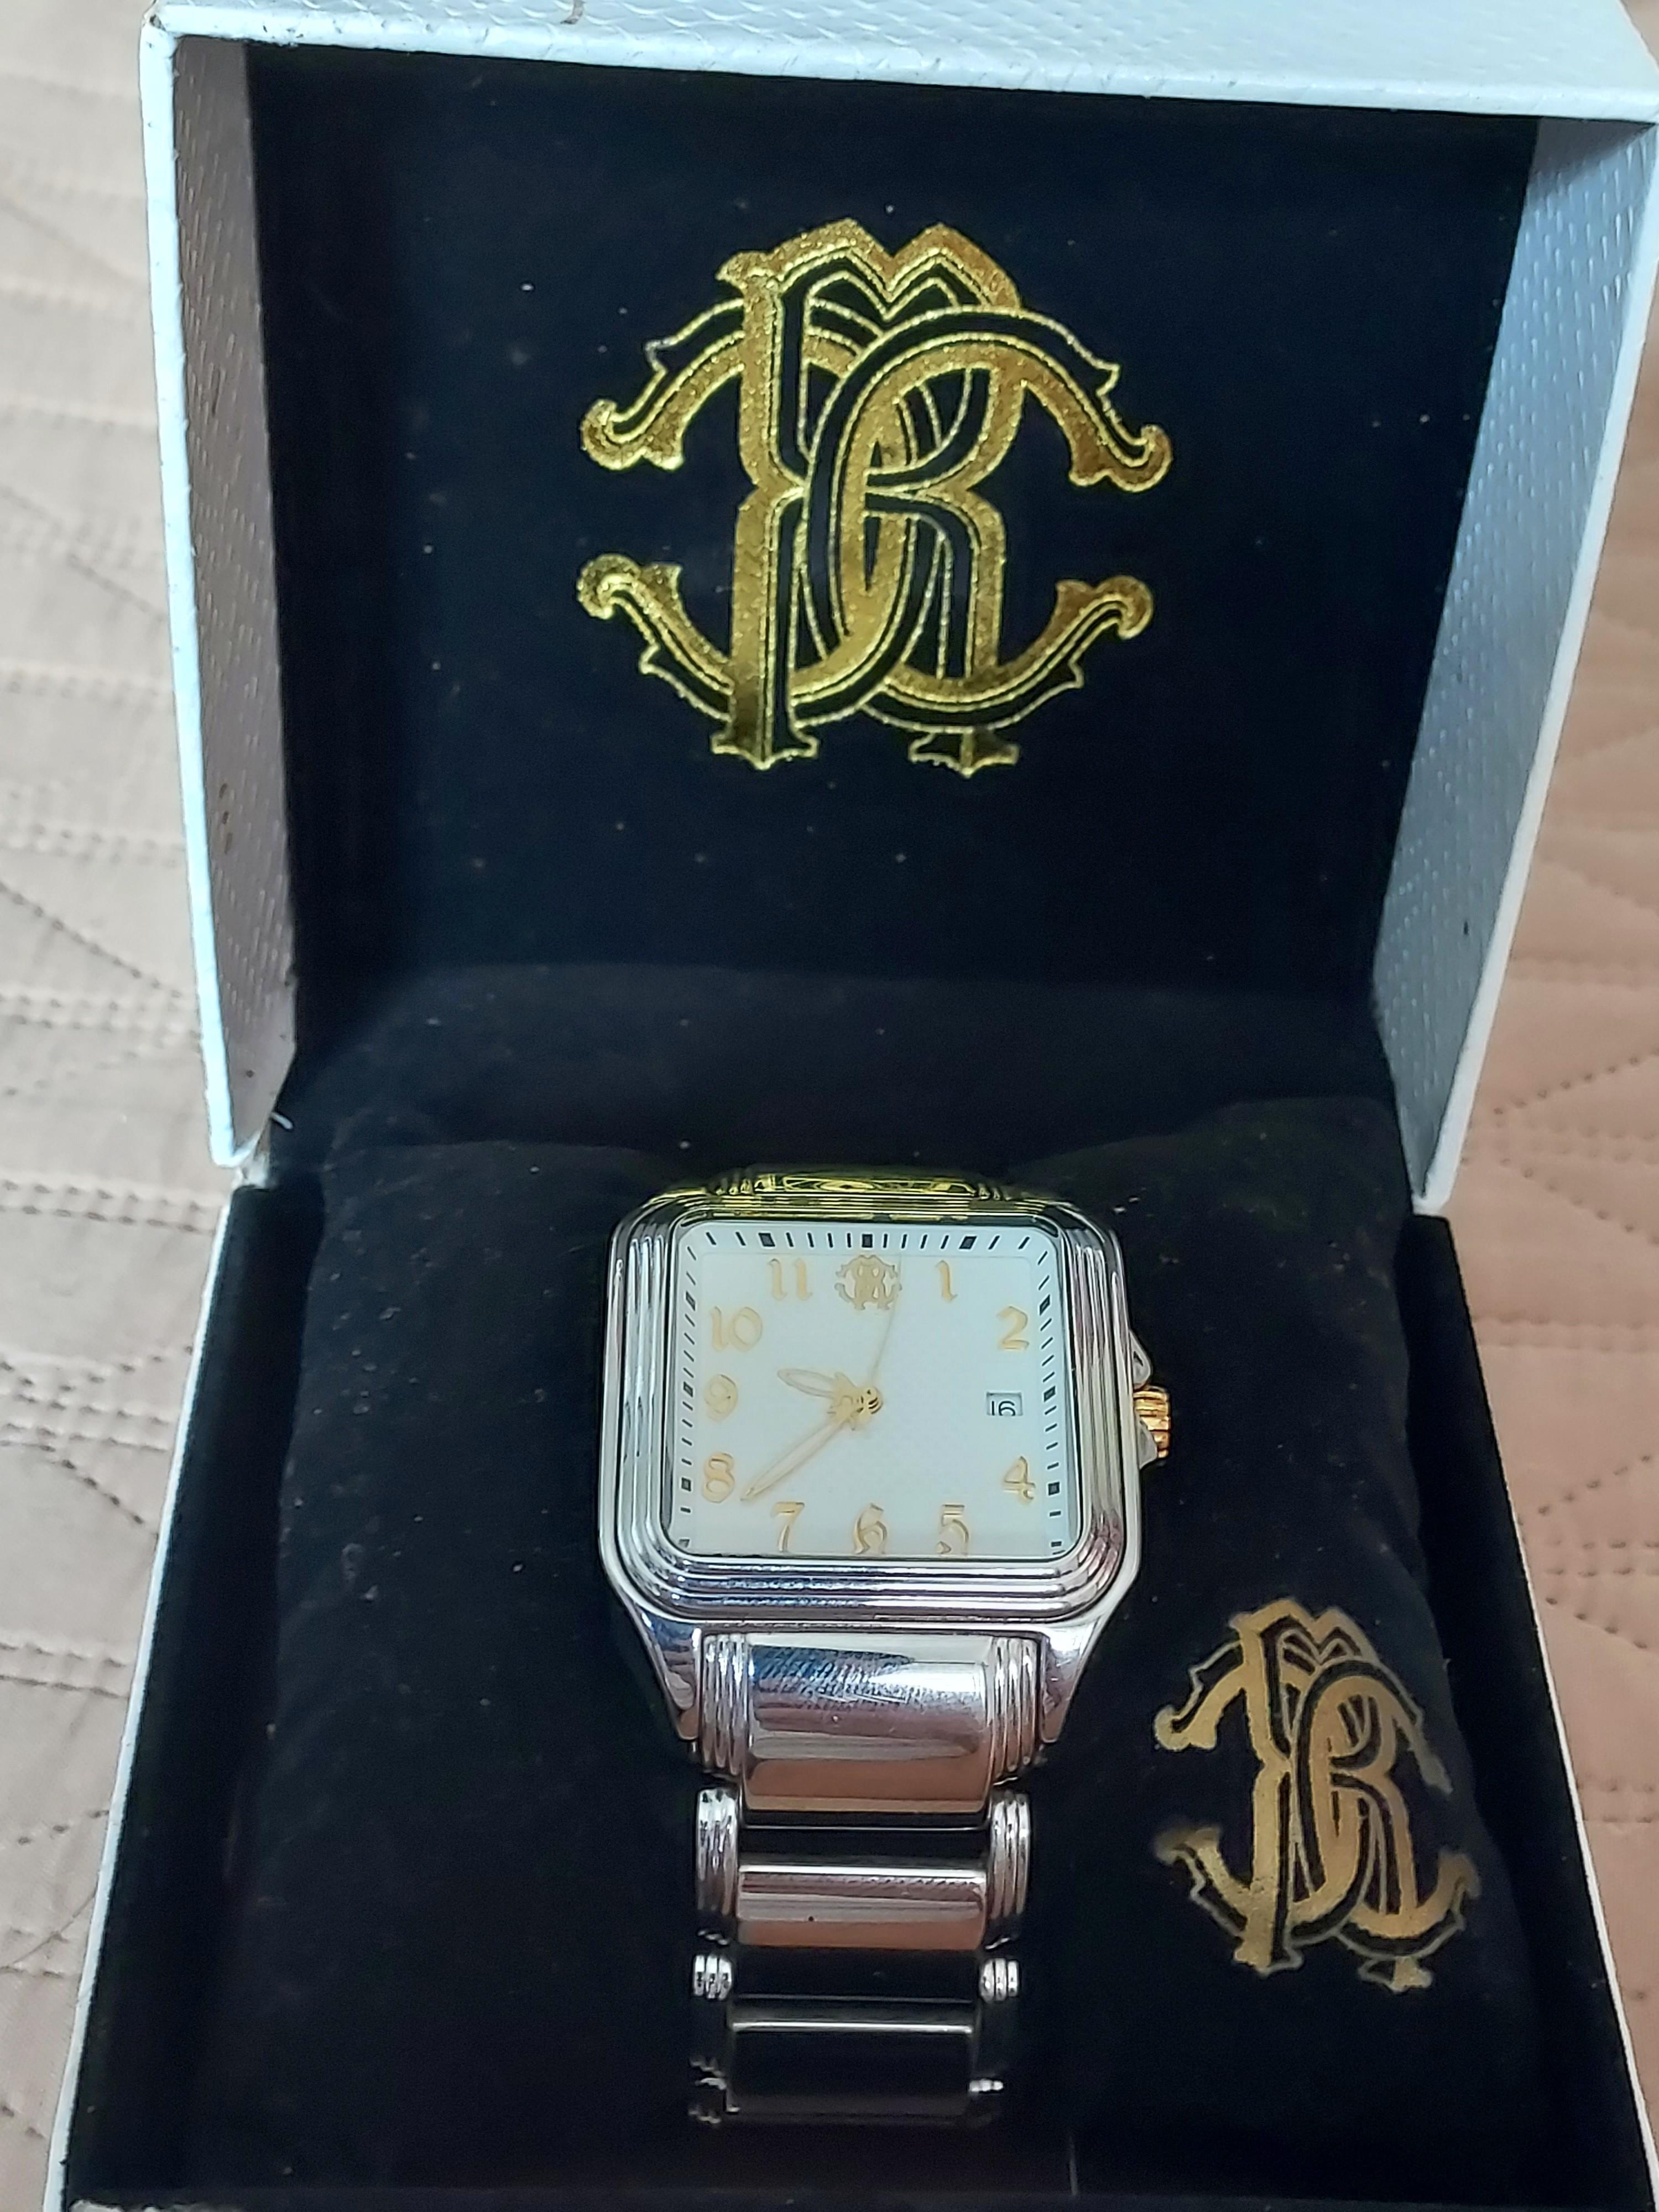 オリジナルデザイン手作り商品 腕時計 ロベルトカヴァッリ New Ladies